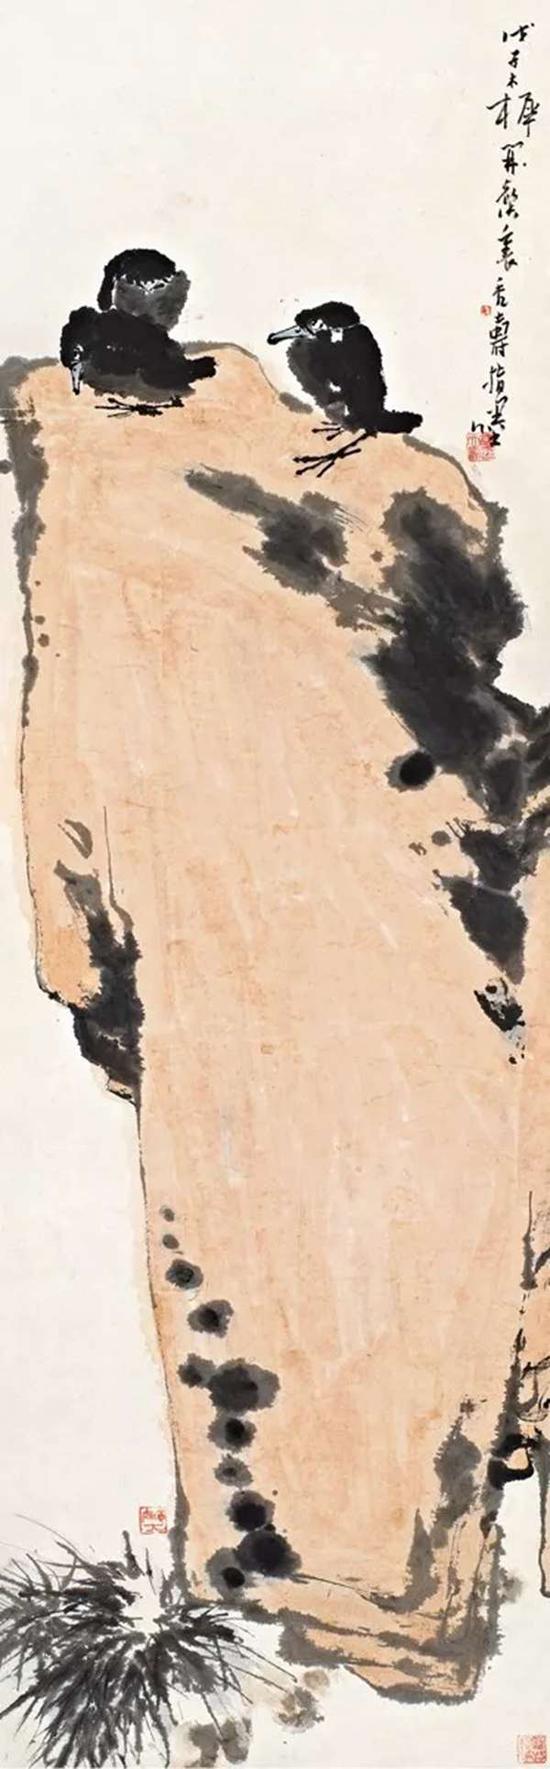 14秋拍诚轩编号59拍品潘天寿指画《石背幽禽》，与本次拍品同为5平尺，以1150万元的高价成交，说明市场对潘天寿指画的推崇